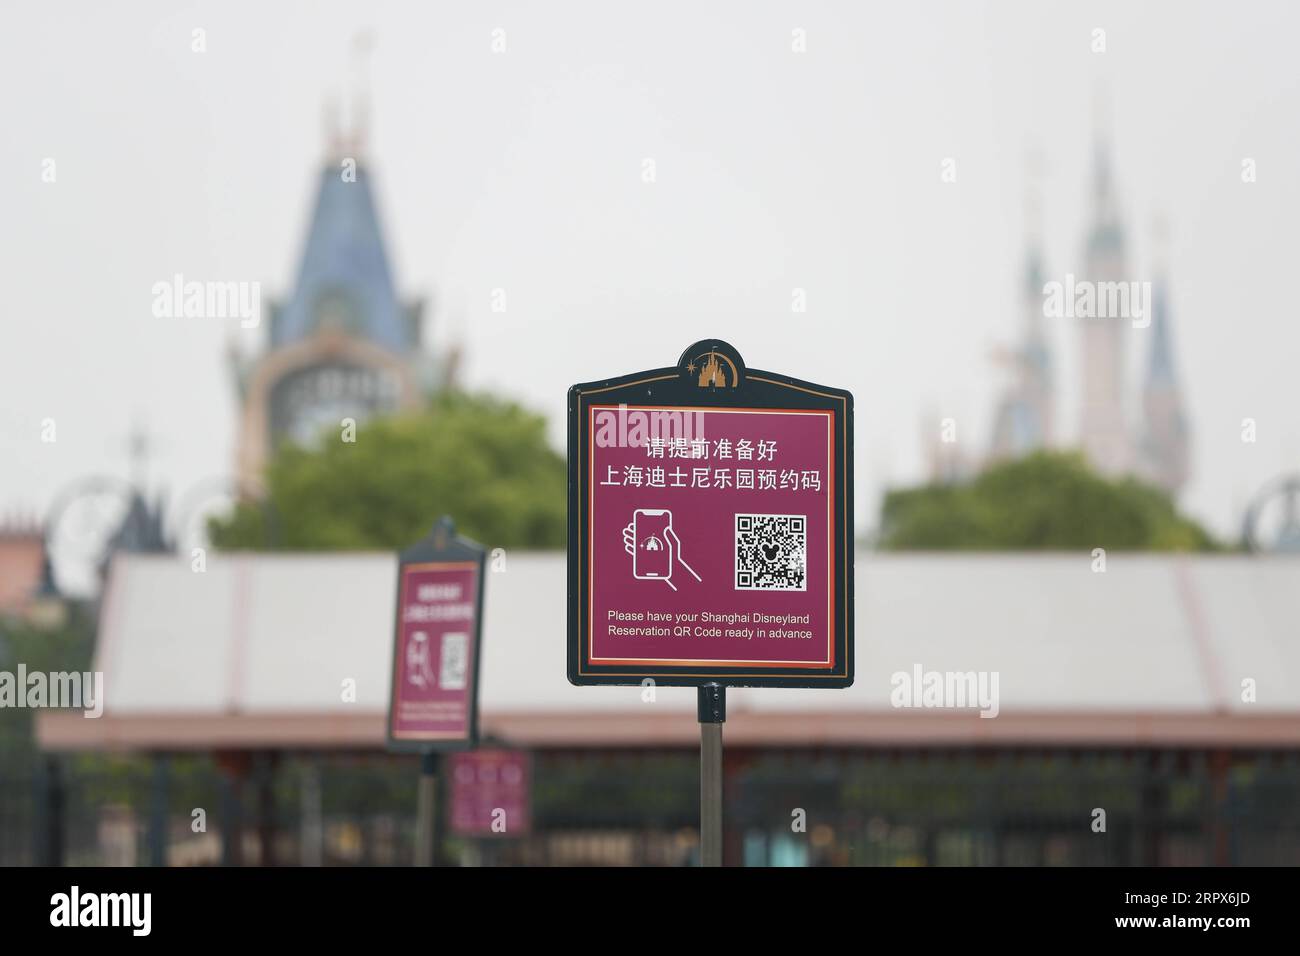 200510 -- SHANGHAI, 10 maggio 2020 -- Un avviso ricorda ai turisti di avere il codice QR di prenotazione pronto in anticipo al Shanghai Disneyland, nella Cina orientale di Shanghai, 10 maggio 2020. Il parco a tema Shanghai Disneyland riaprirà al pubblico l'11 maggio, dopo che il resort ha annunciato la chiusura temporanea a fine gennaio in risposta alla nuova epidemia di coronavirus. Durante la fase iniziale di riapertura, il parco istituirà nuove misure e procedure, tra cui l'apertura con frequenza limitata e la richiesta di biglietti e prenotazioni anticipati, l'organizzazione del distanziamento sociale in coda, restaura Foto Stock